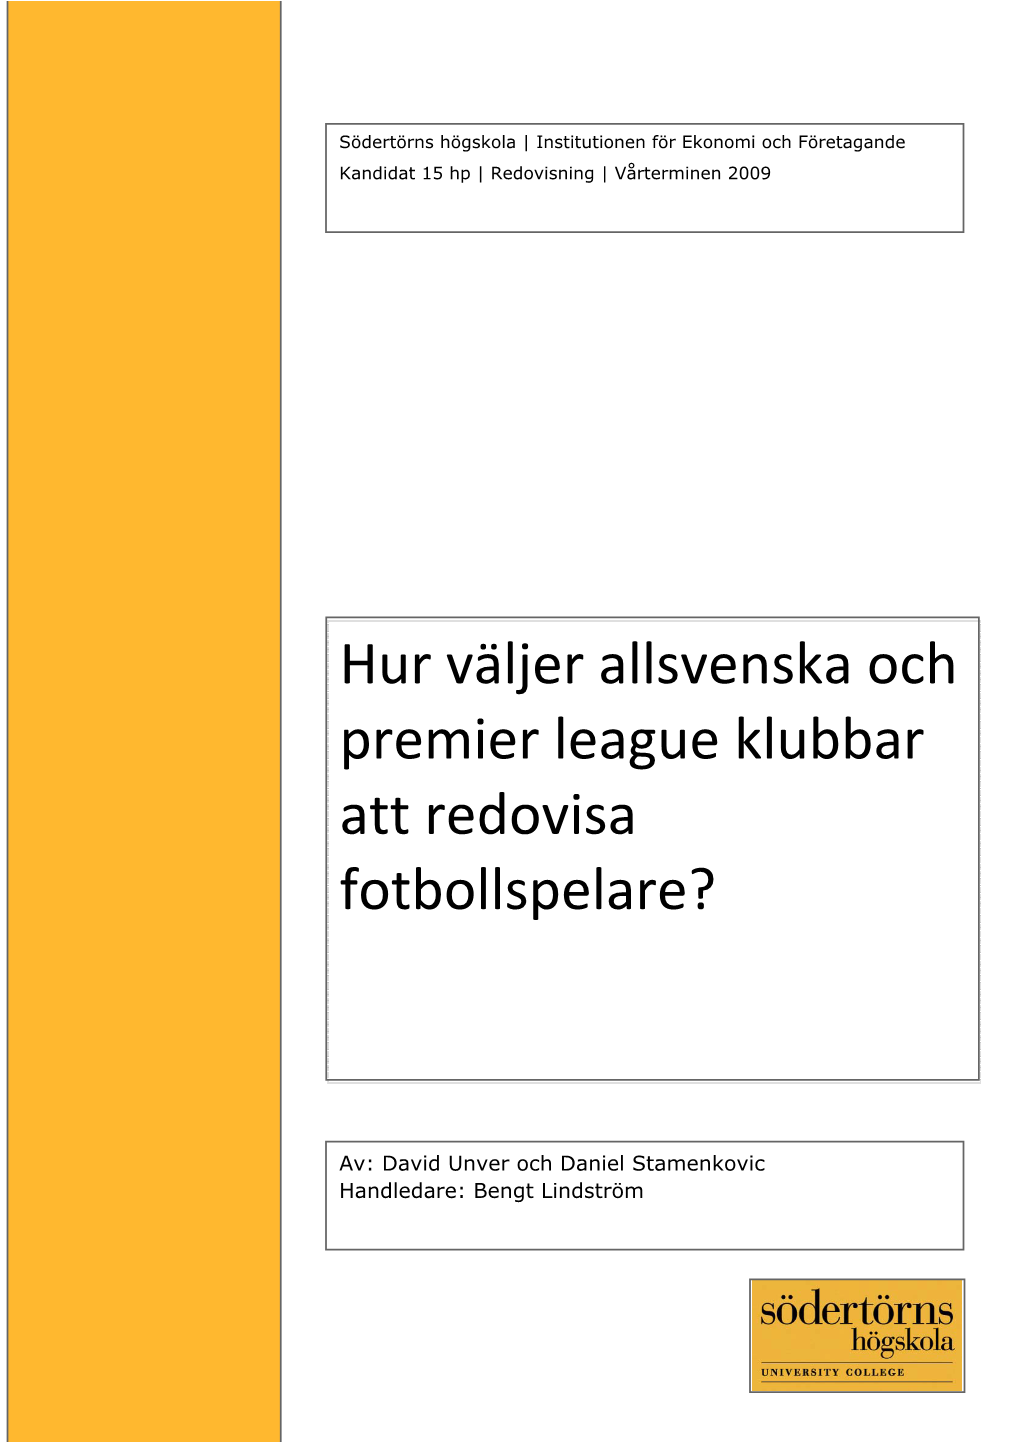 Hur Väljer Allsvenska Och Premier League Klubbar Att Redovisa Fotbollspelare?